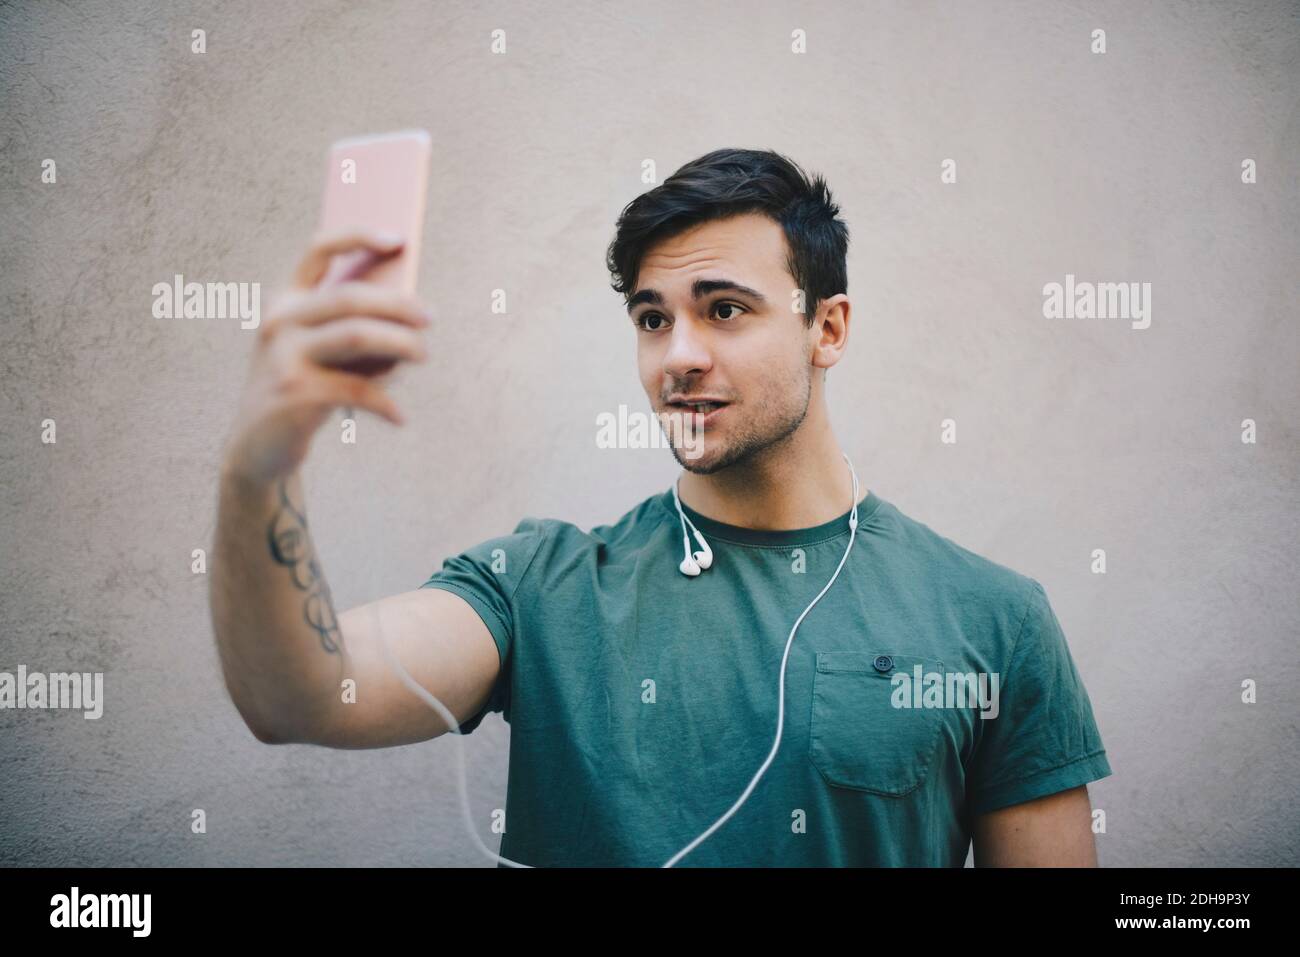 Junge männliche Computer-Programmierer unter Selfie mit Smartphone gegen Beigefarbene Wand im Büro Stockfoto